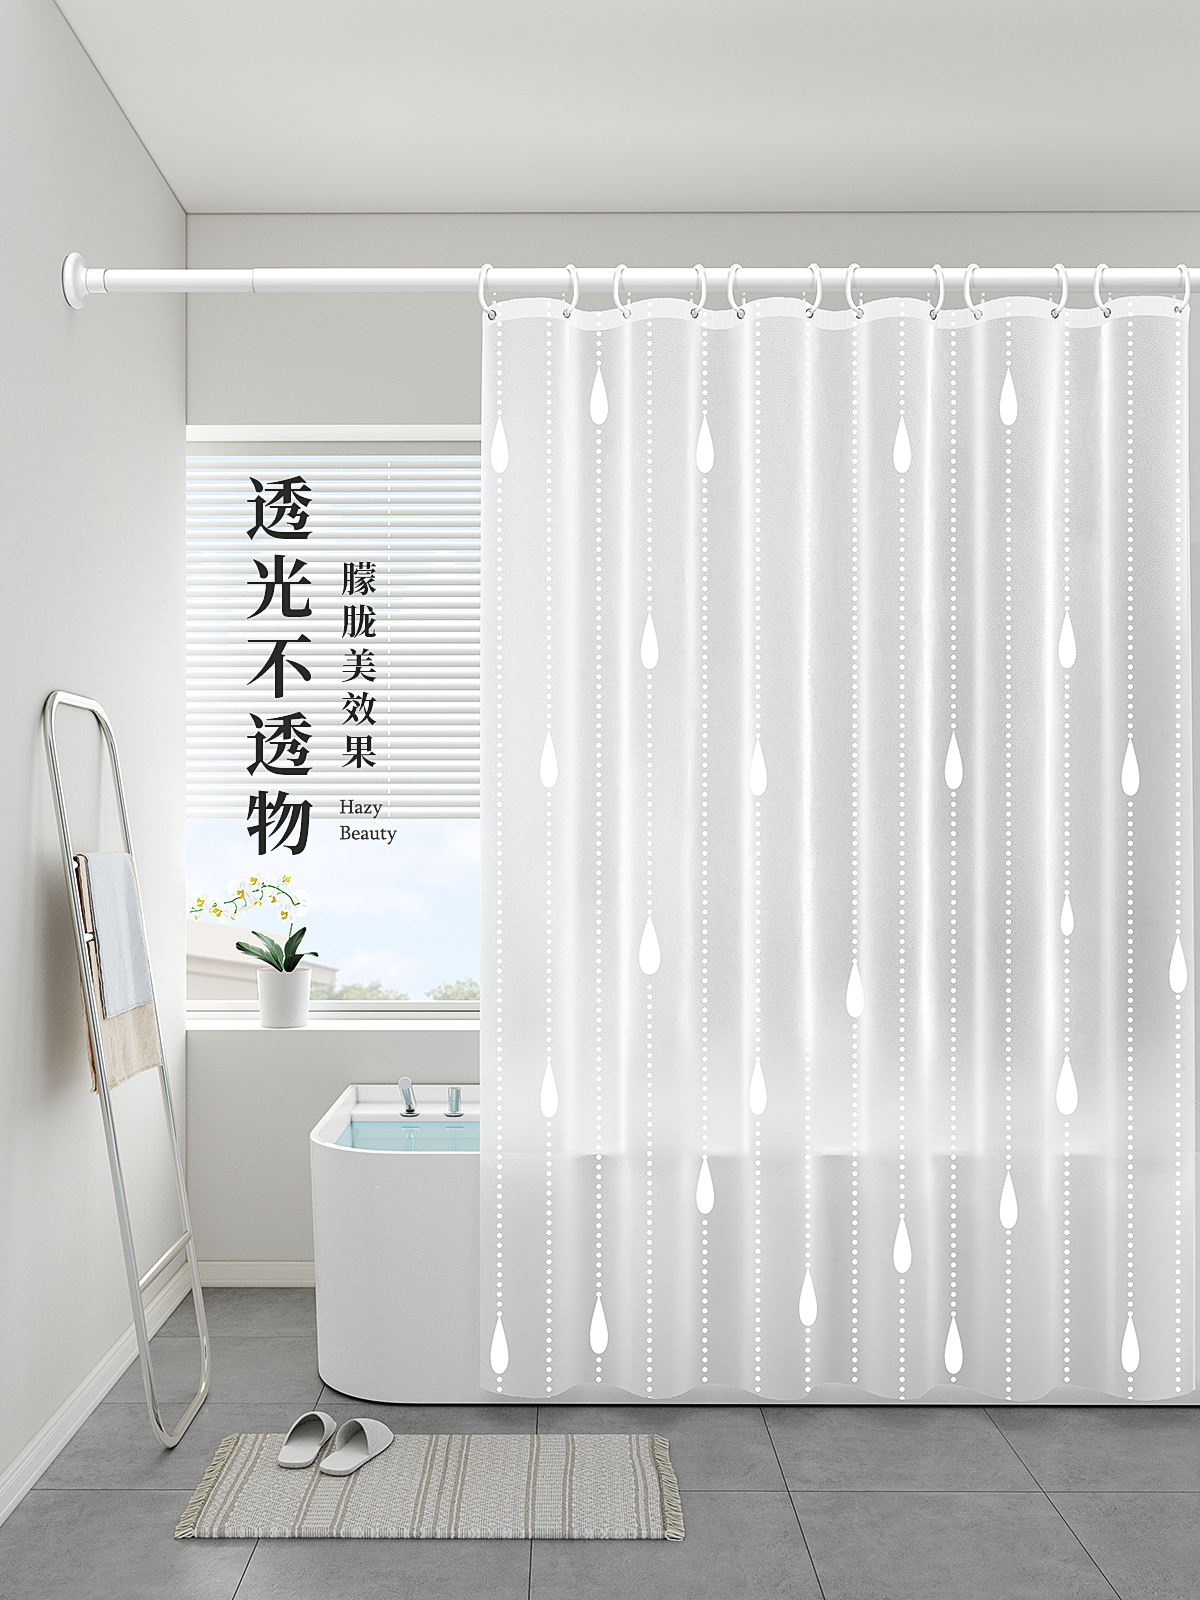 防水防黴浴簾乾濕分離淋浴房裝飾簡約風格浴室門簾